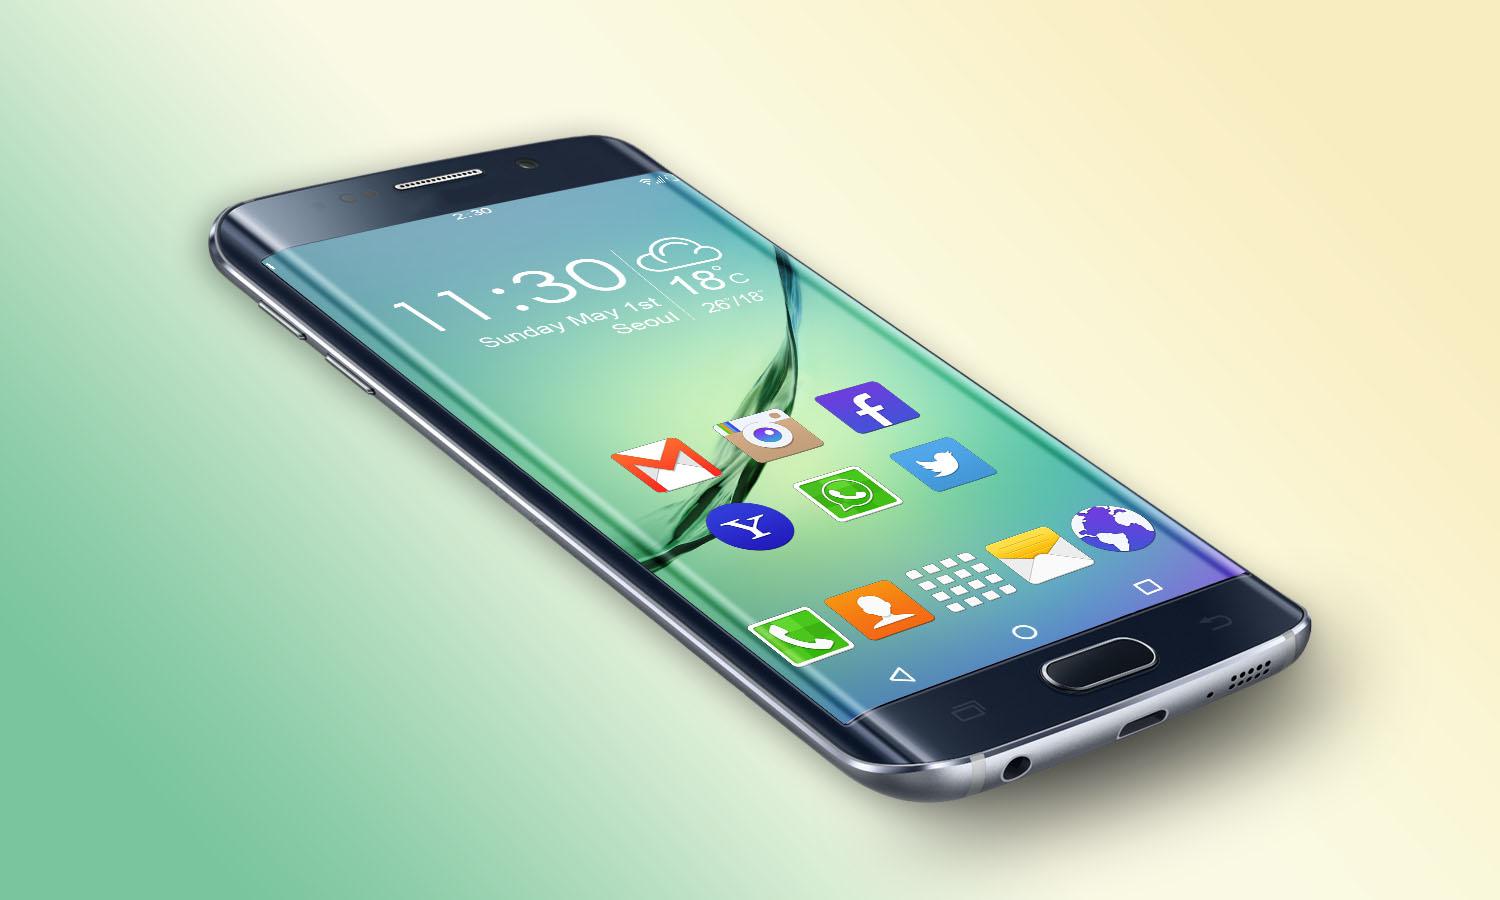 لانچر جدید Galaxy S6 + دانلود